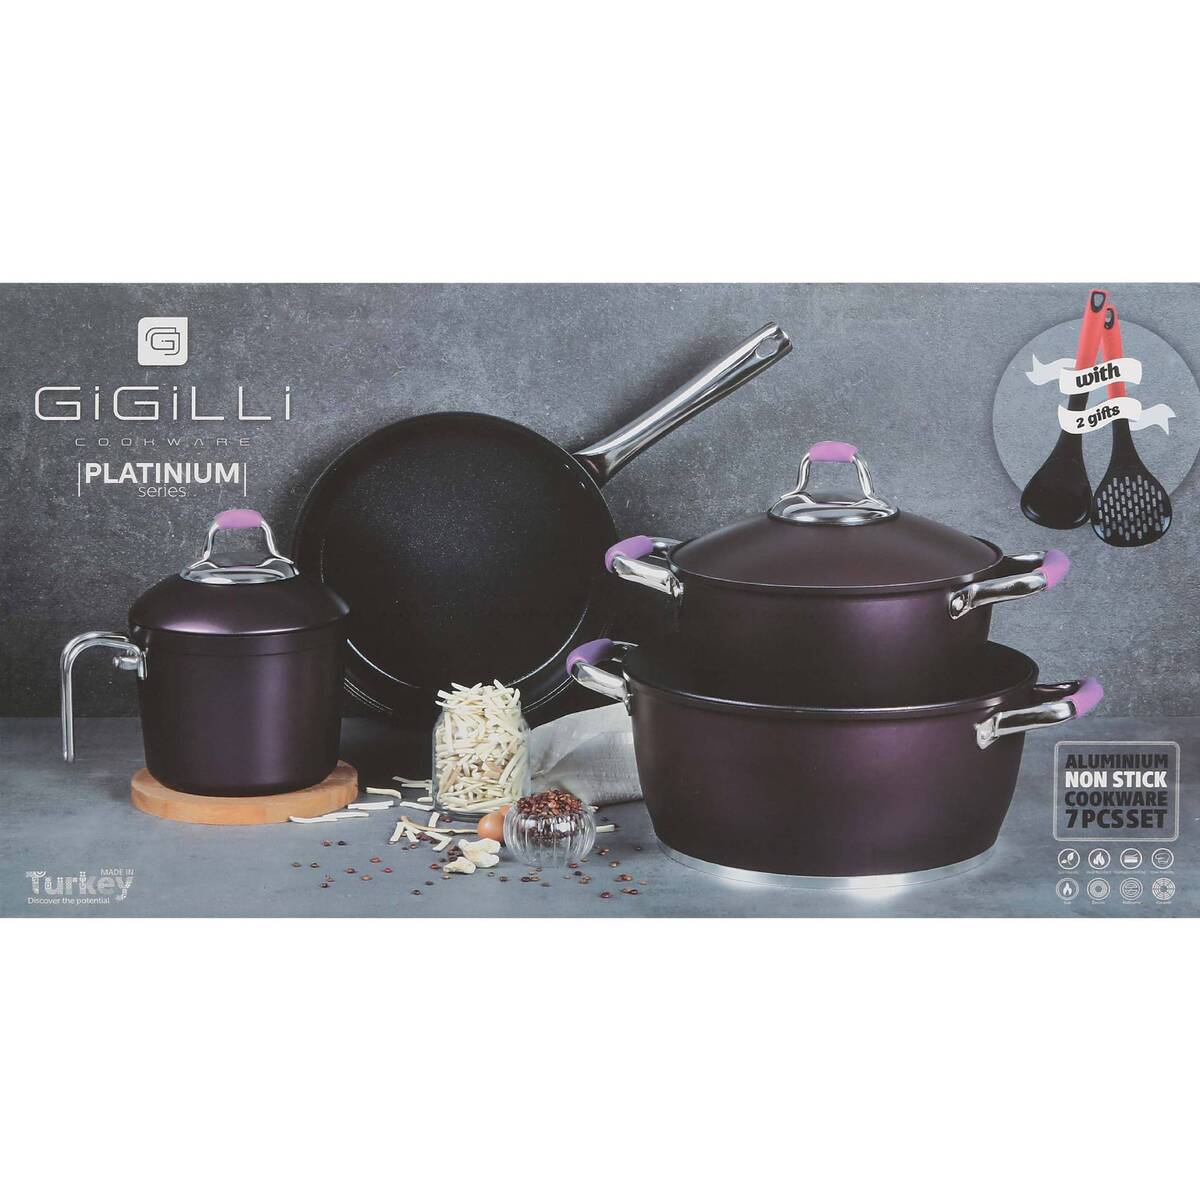 Gigilli Granite Cookware Set Platinium 7pcs Turkey